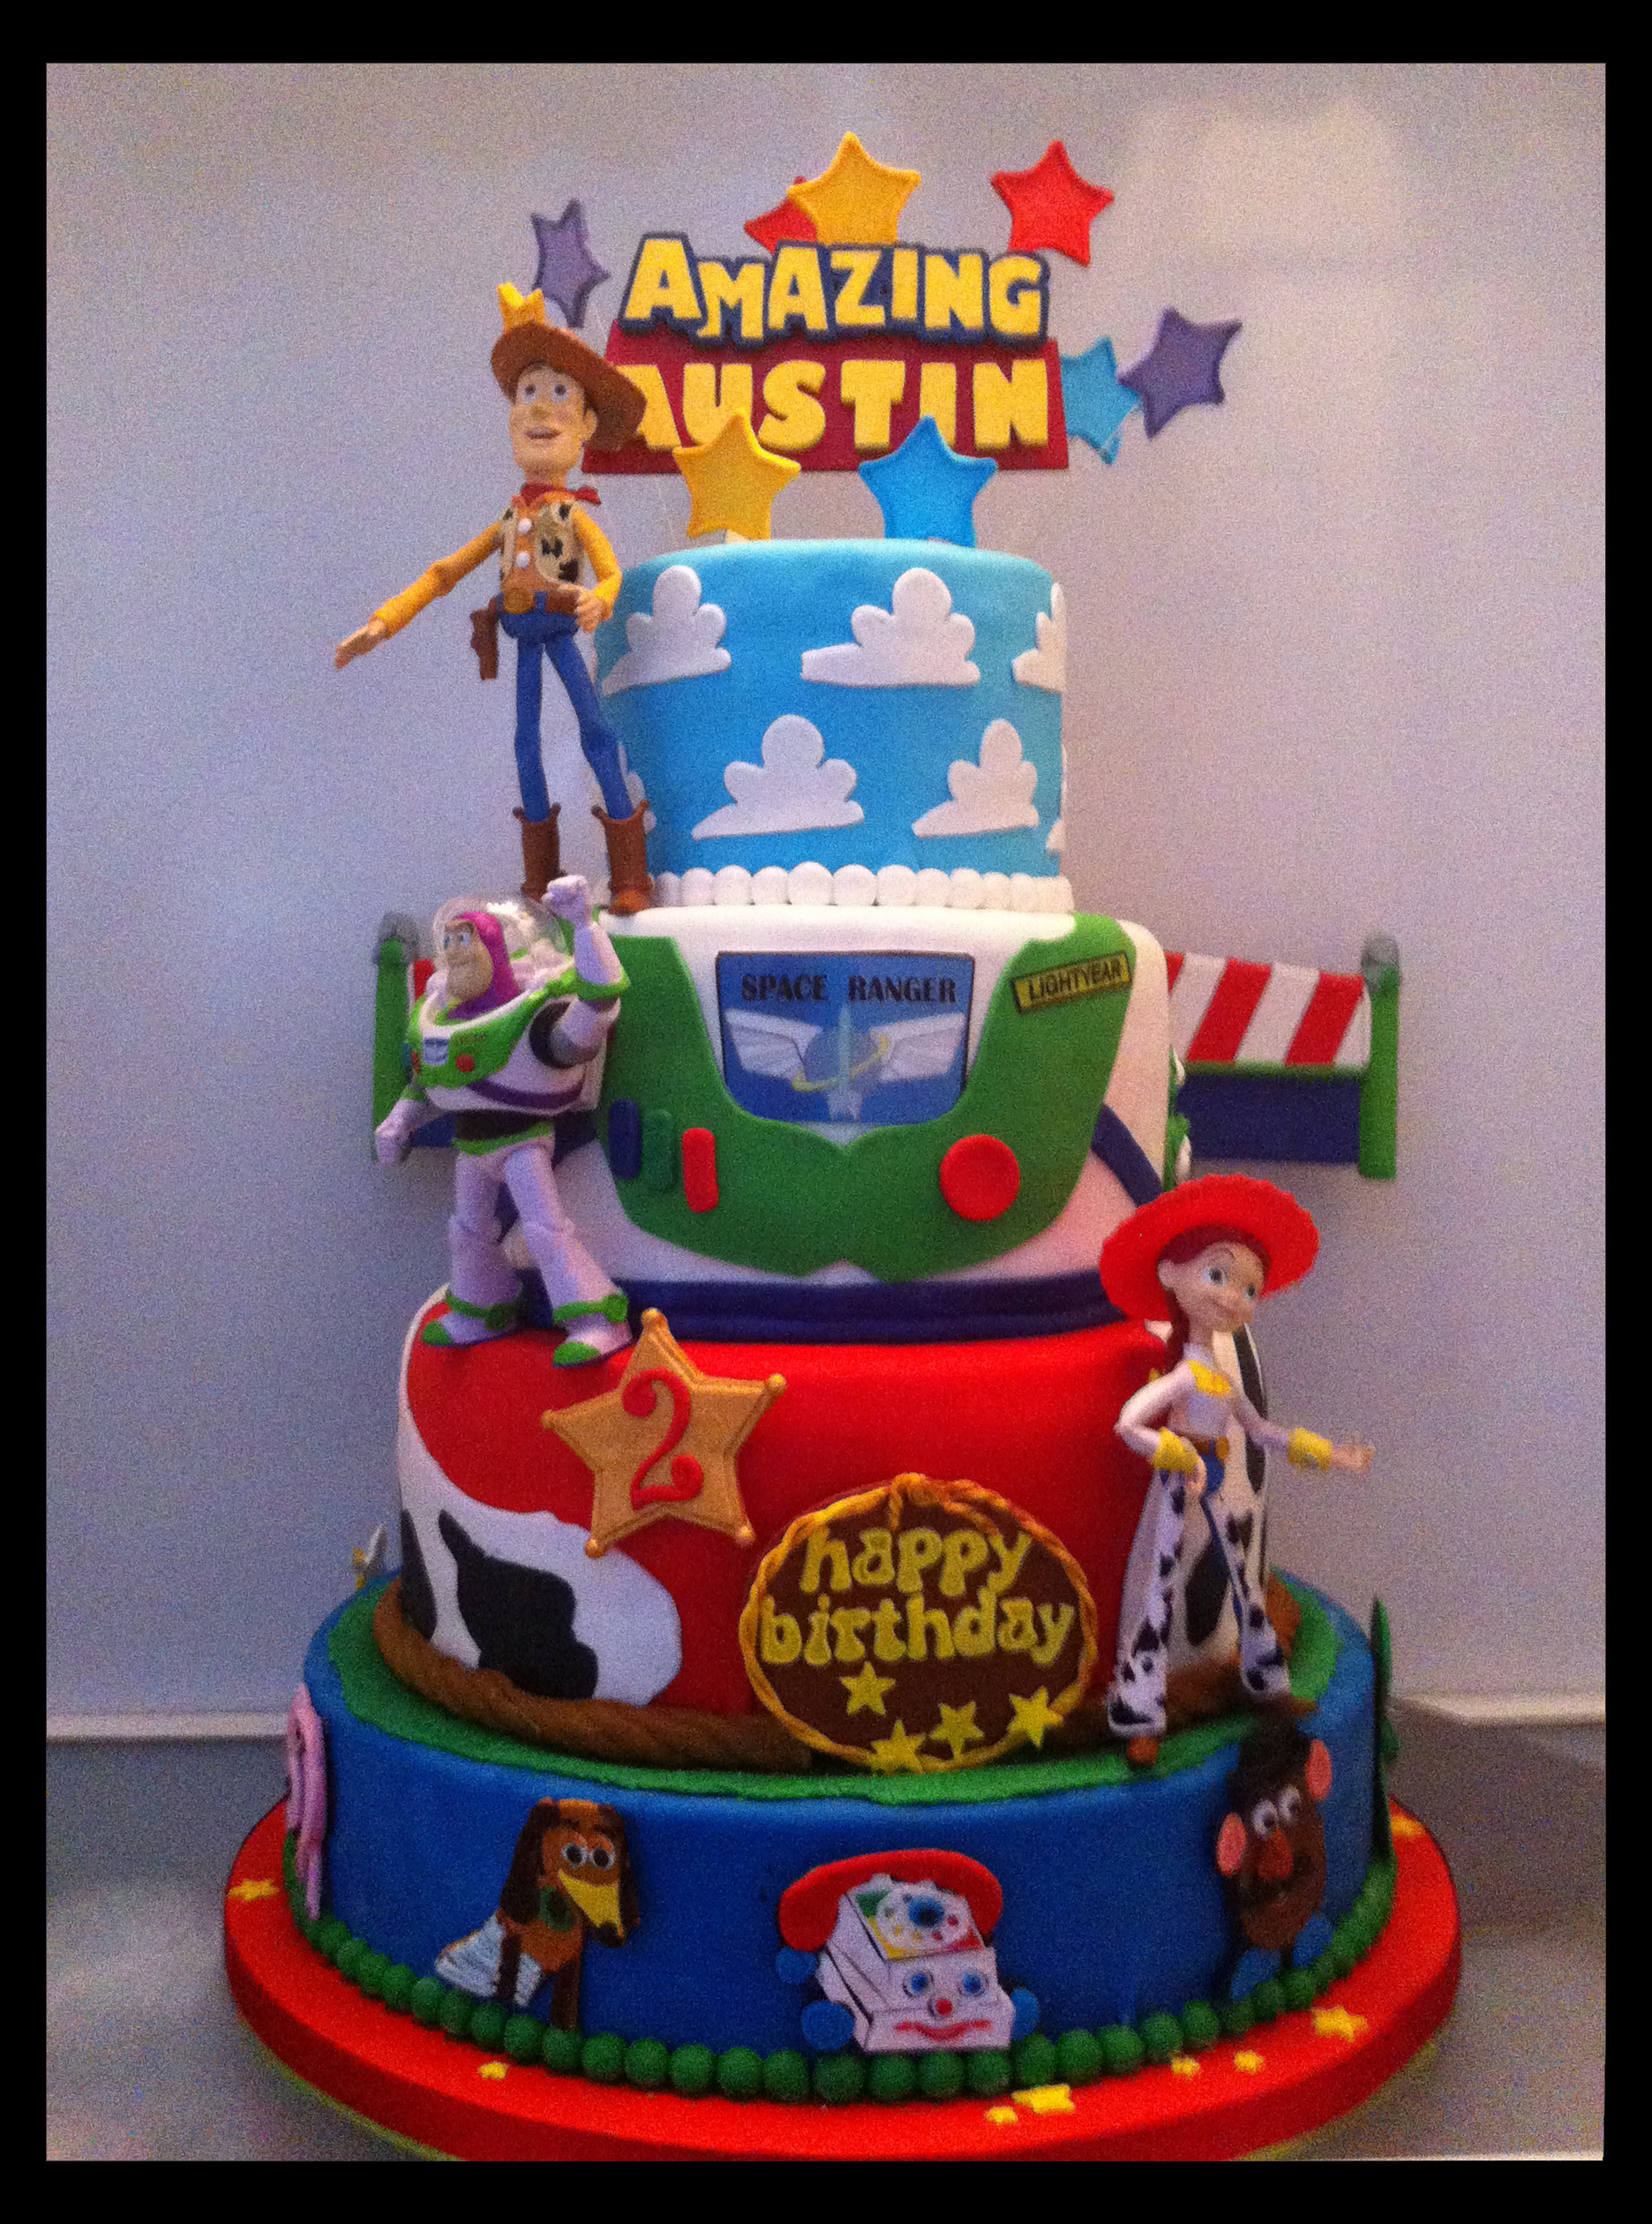 Toy Story Birthday Cake
 Amazing Austin’s Toy Story Birthday Cake – Mad s Cakes